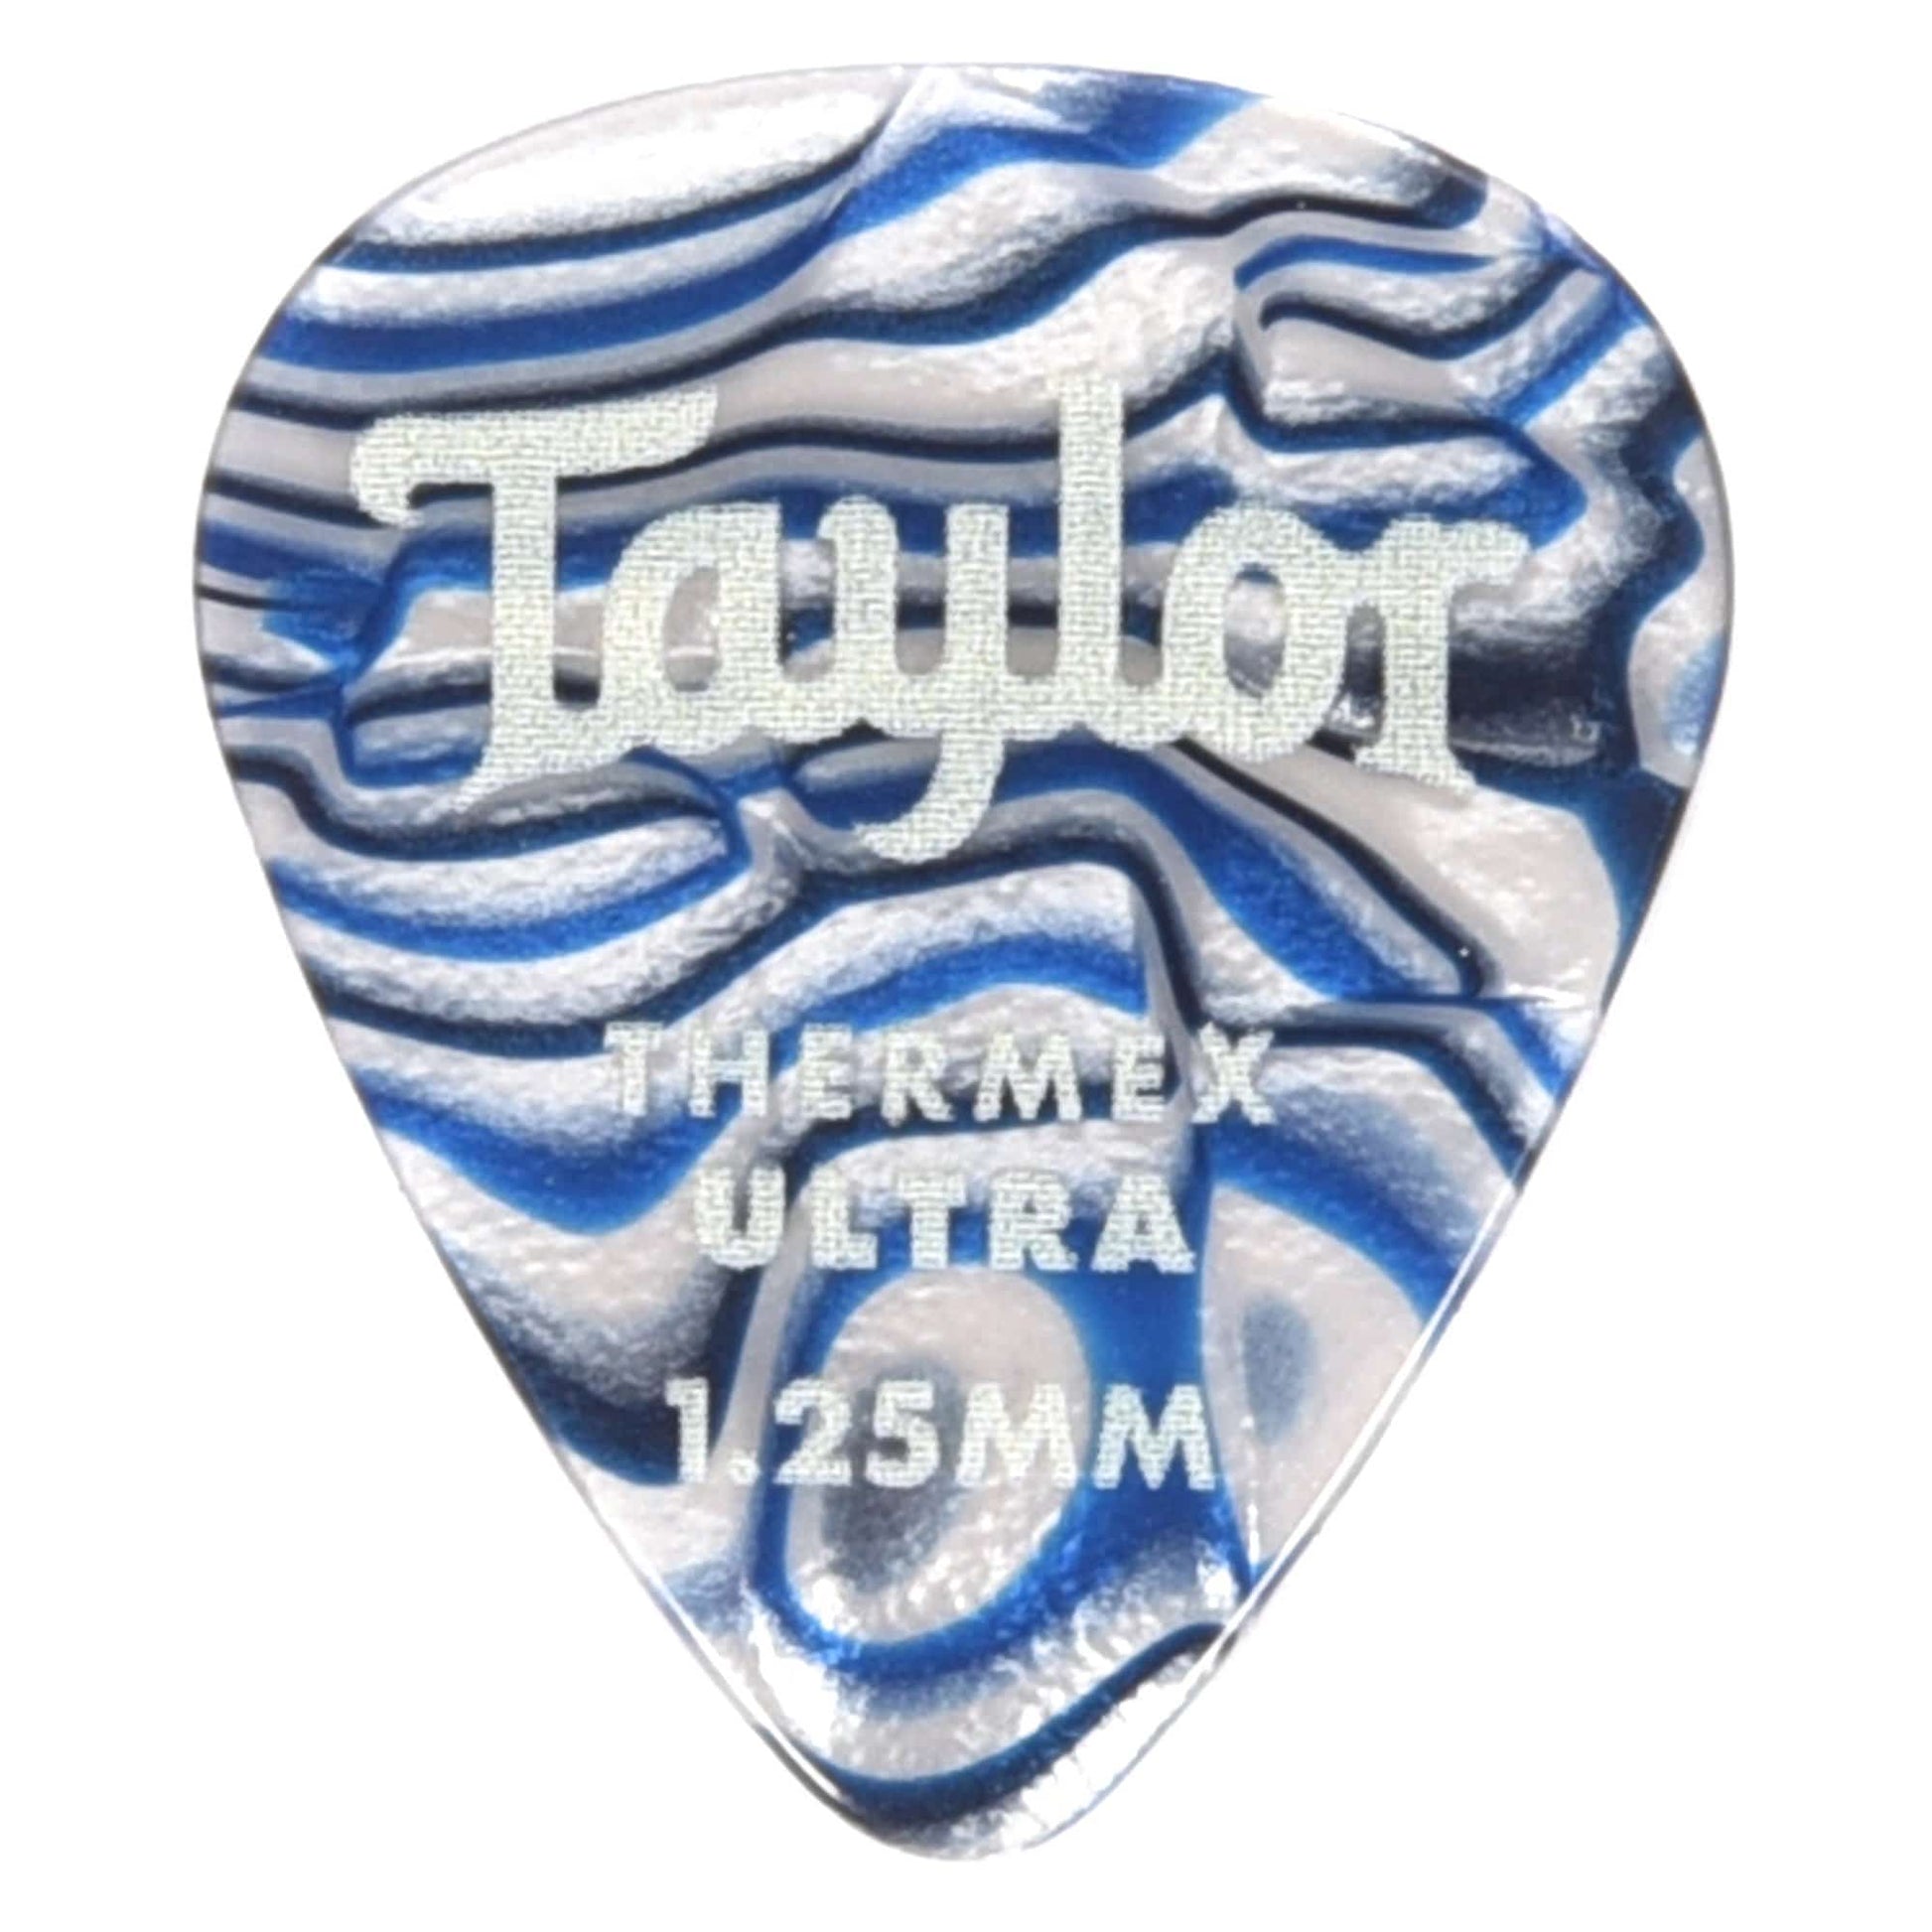 Taylor Premium Darktone 351 Thermex Ultra Picks Blue Swirl 1.25mm 4 Pack (24) Bundle Accessories / Picks